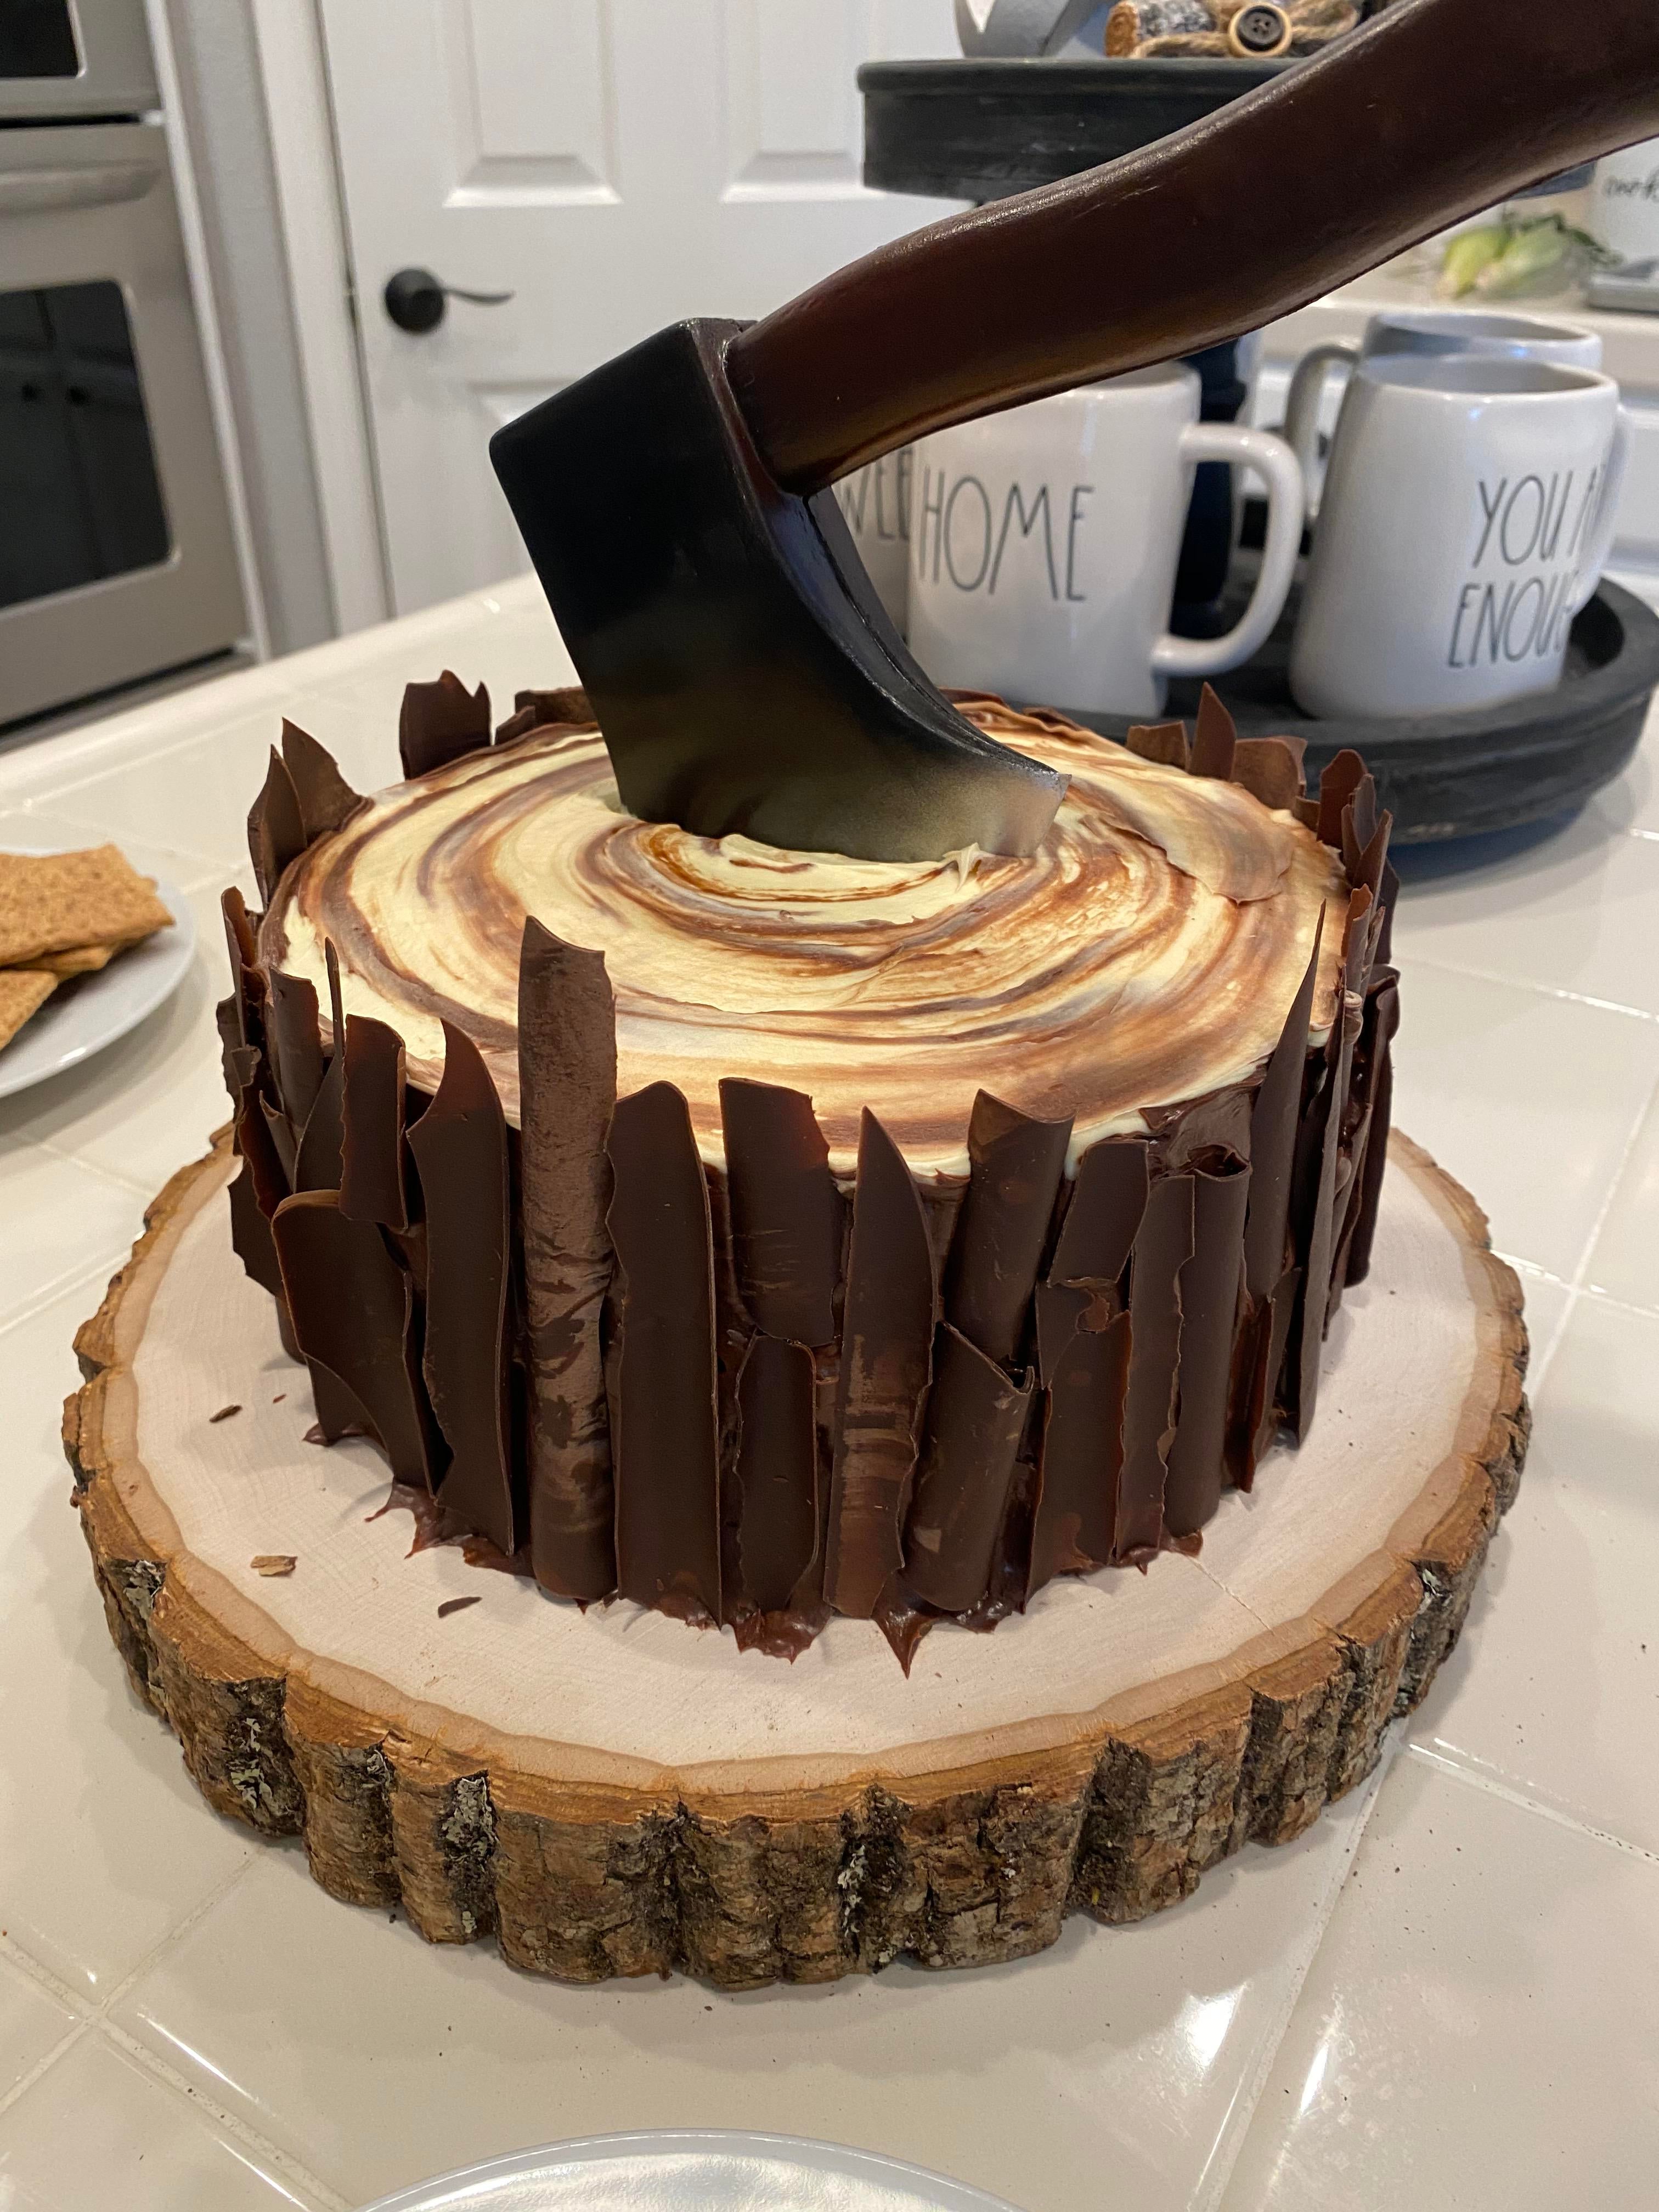 Die 60 Besten Bilder Zu Woodworker Kuchen In 2020 Kuche Kuchenprodukte Landhauskuche